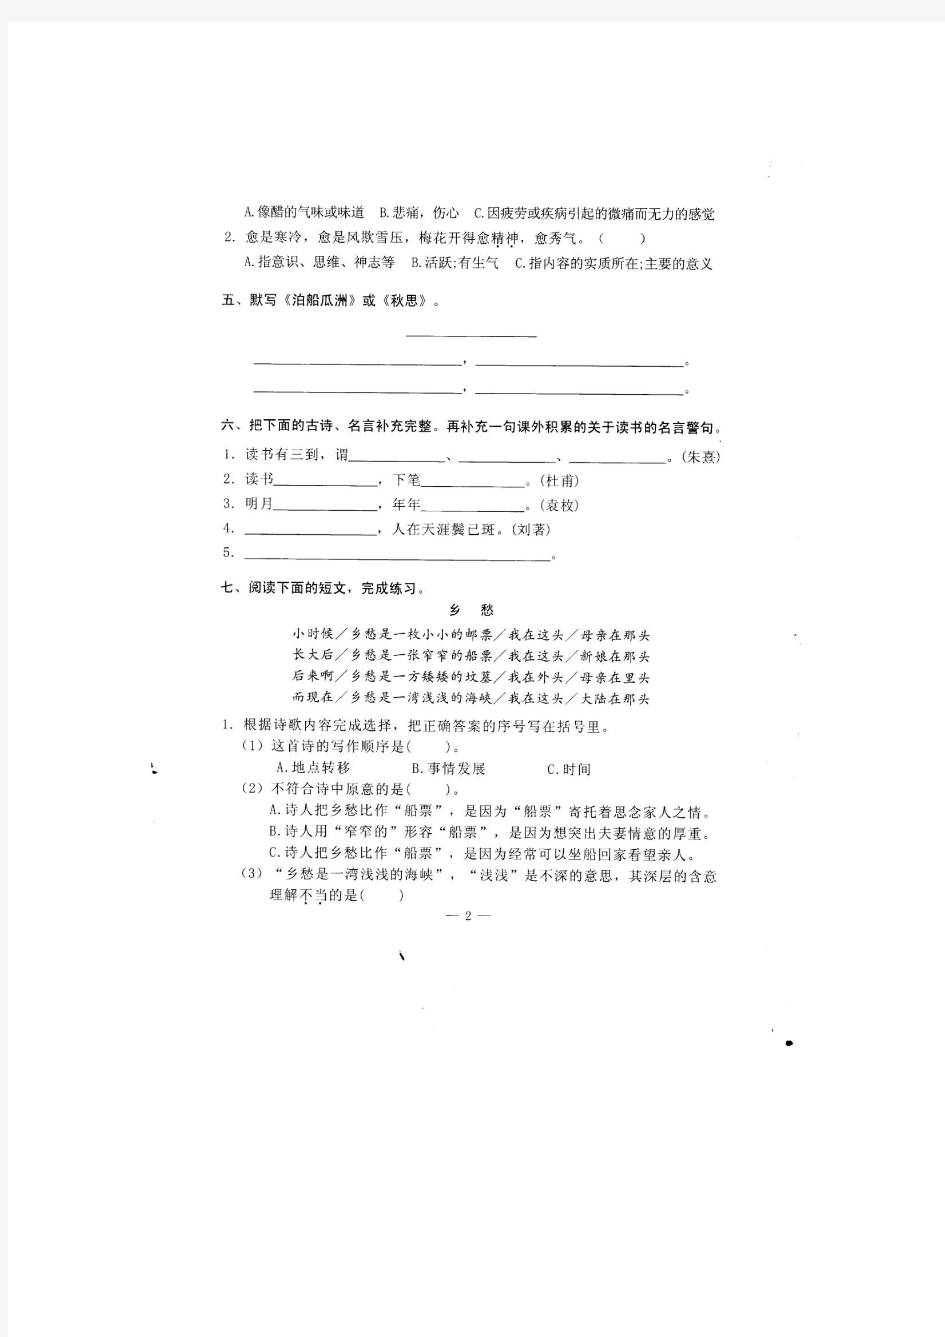 广州市2013年学年第一学期小学语文五年级综合练习参考内容(一)